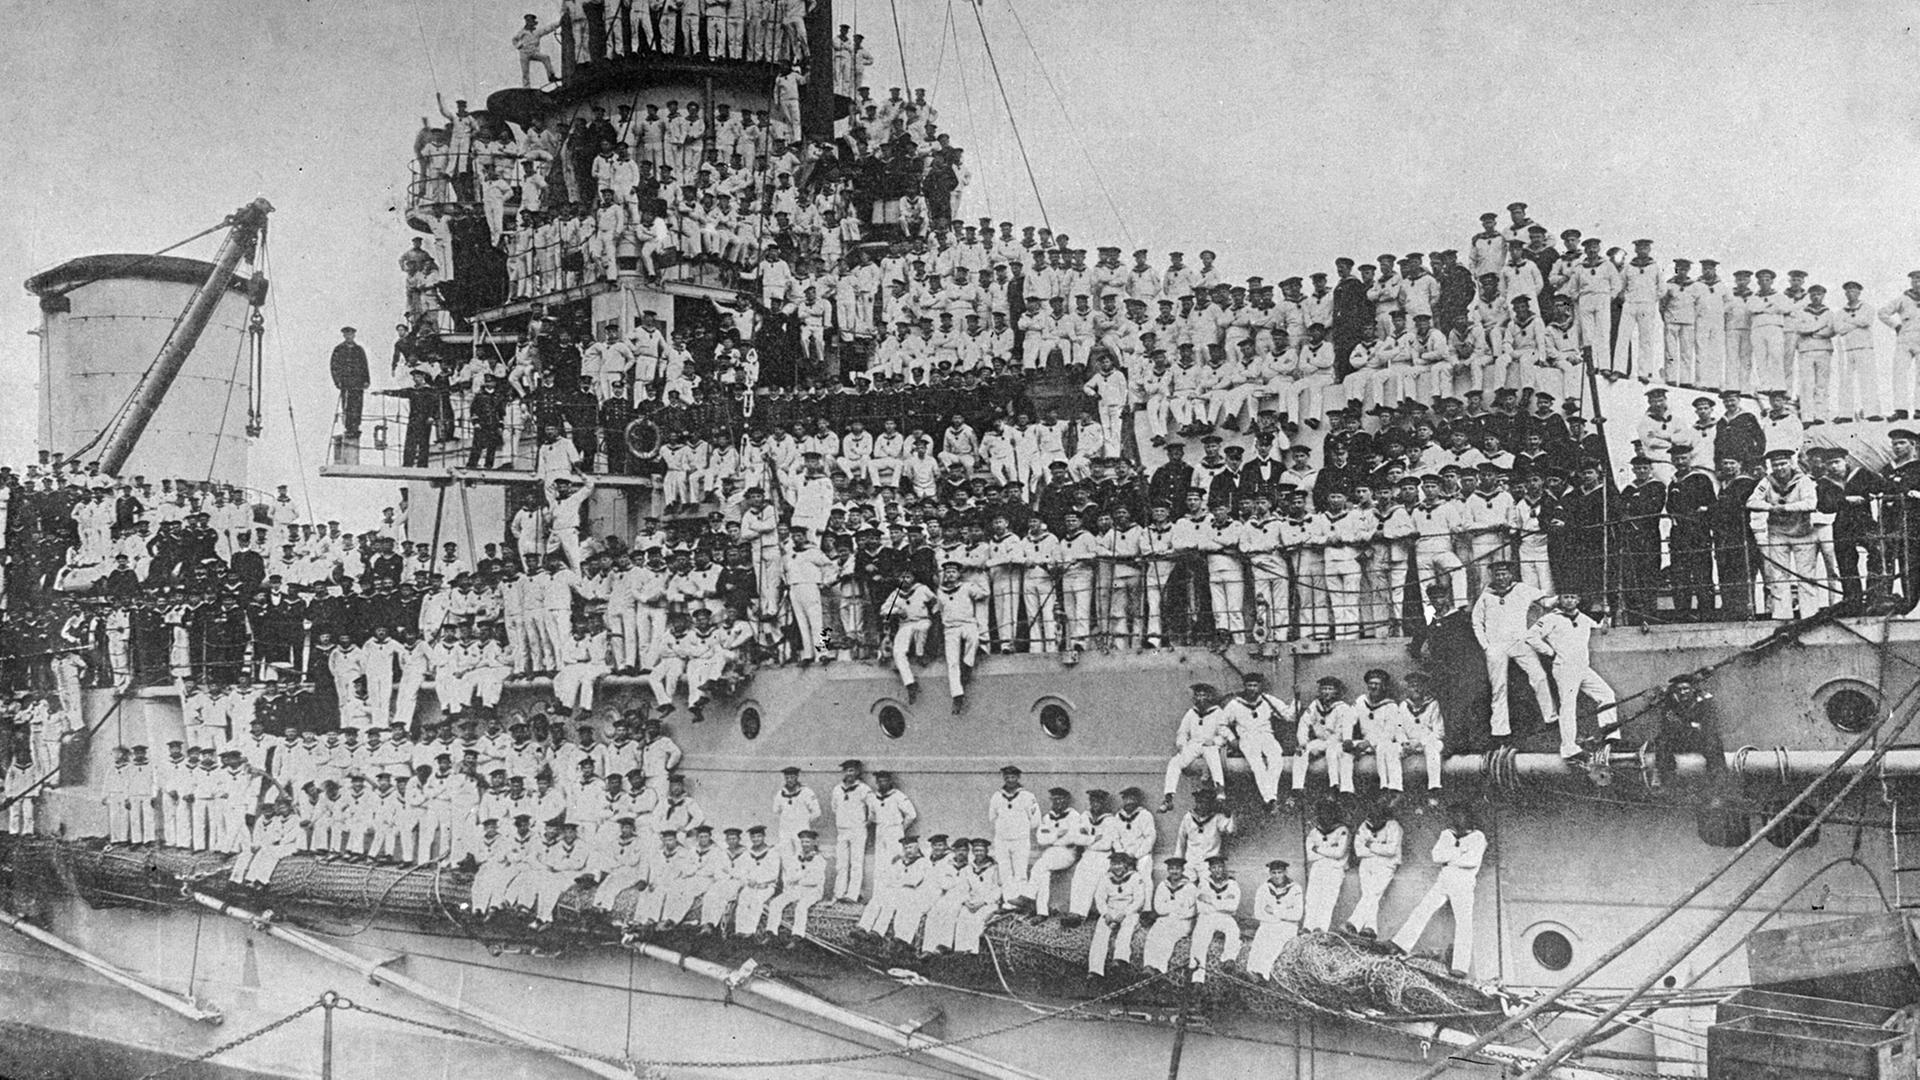 Ein Kriegsschiff der Deutschen Marine mit Matrosen an Bord, aufgenommen wahrscheinlich 1914